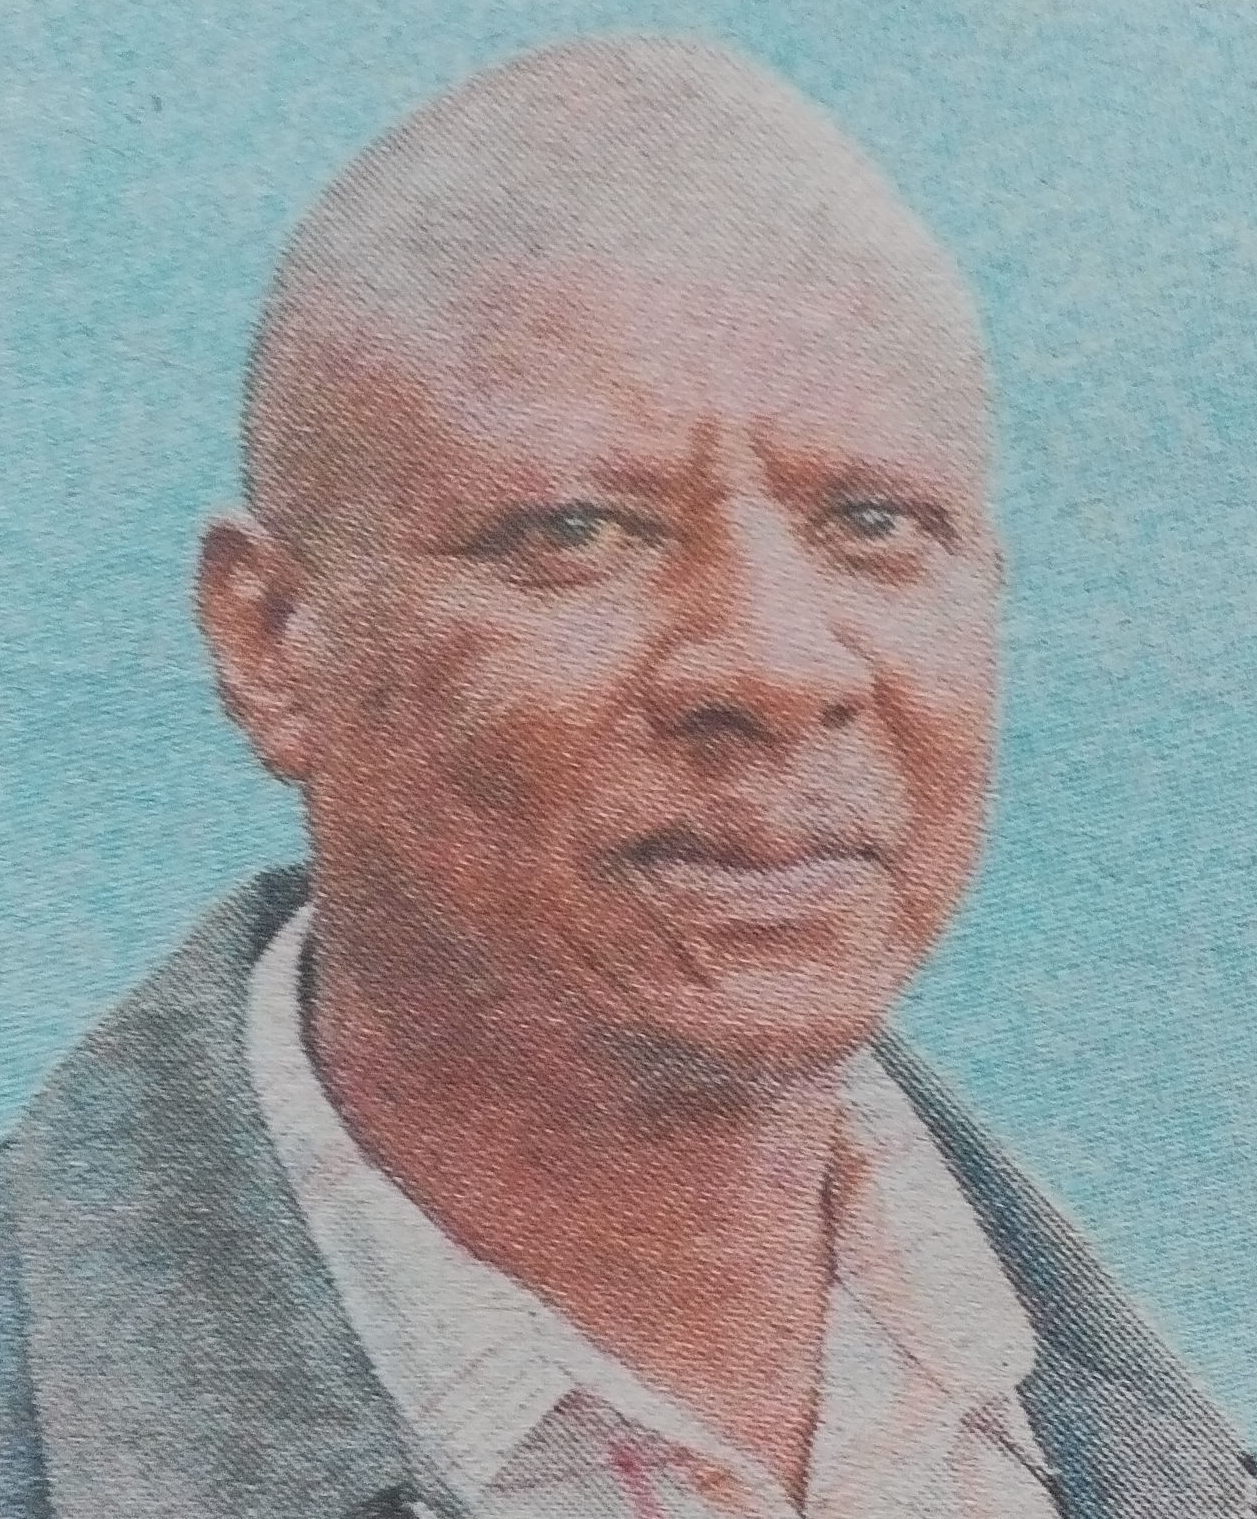 Obituary Image of Zachary Muriuki Njure